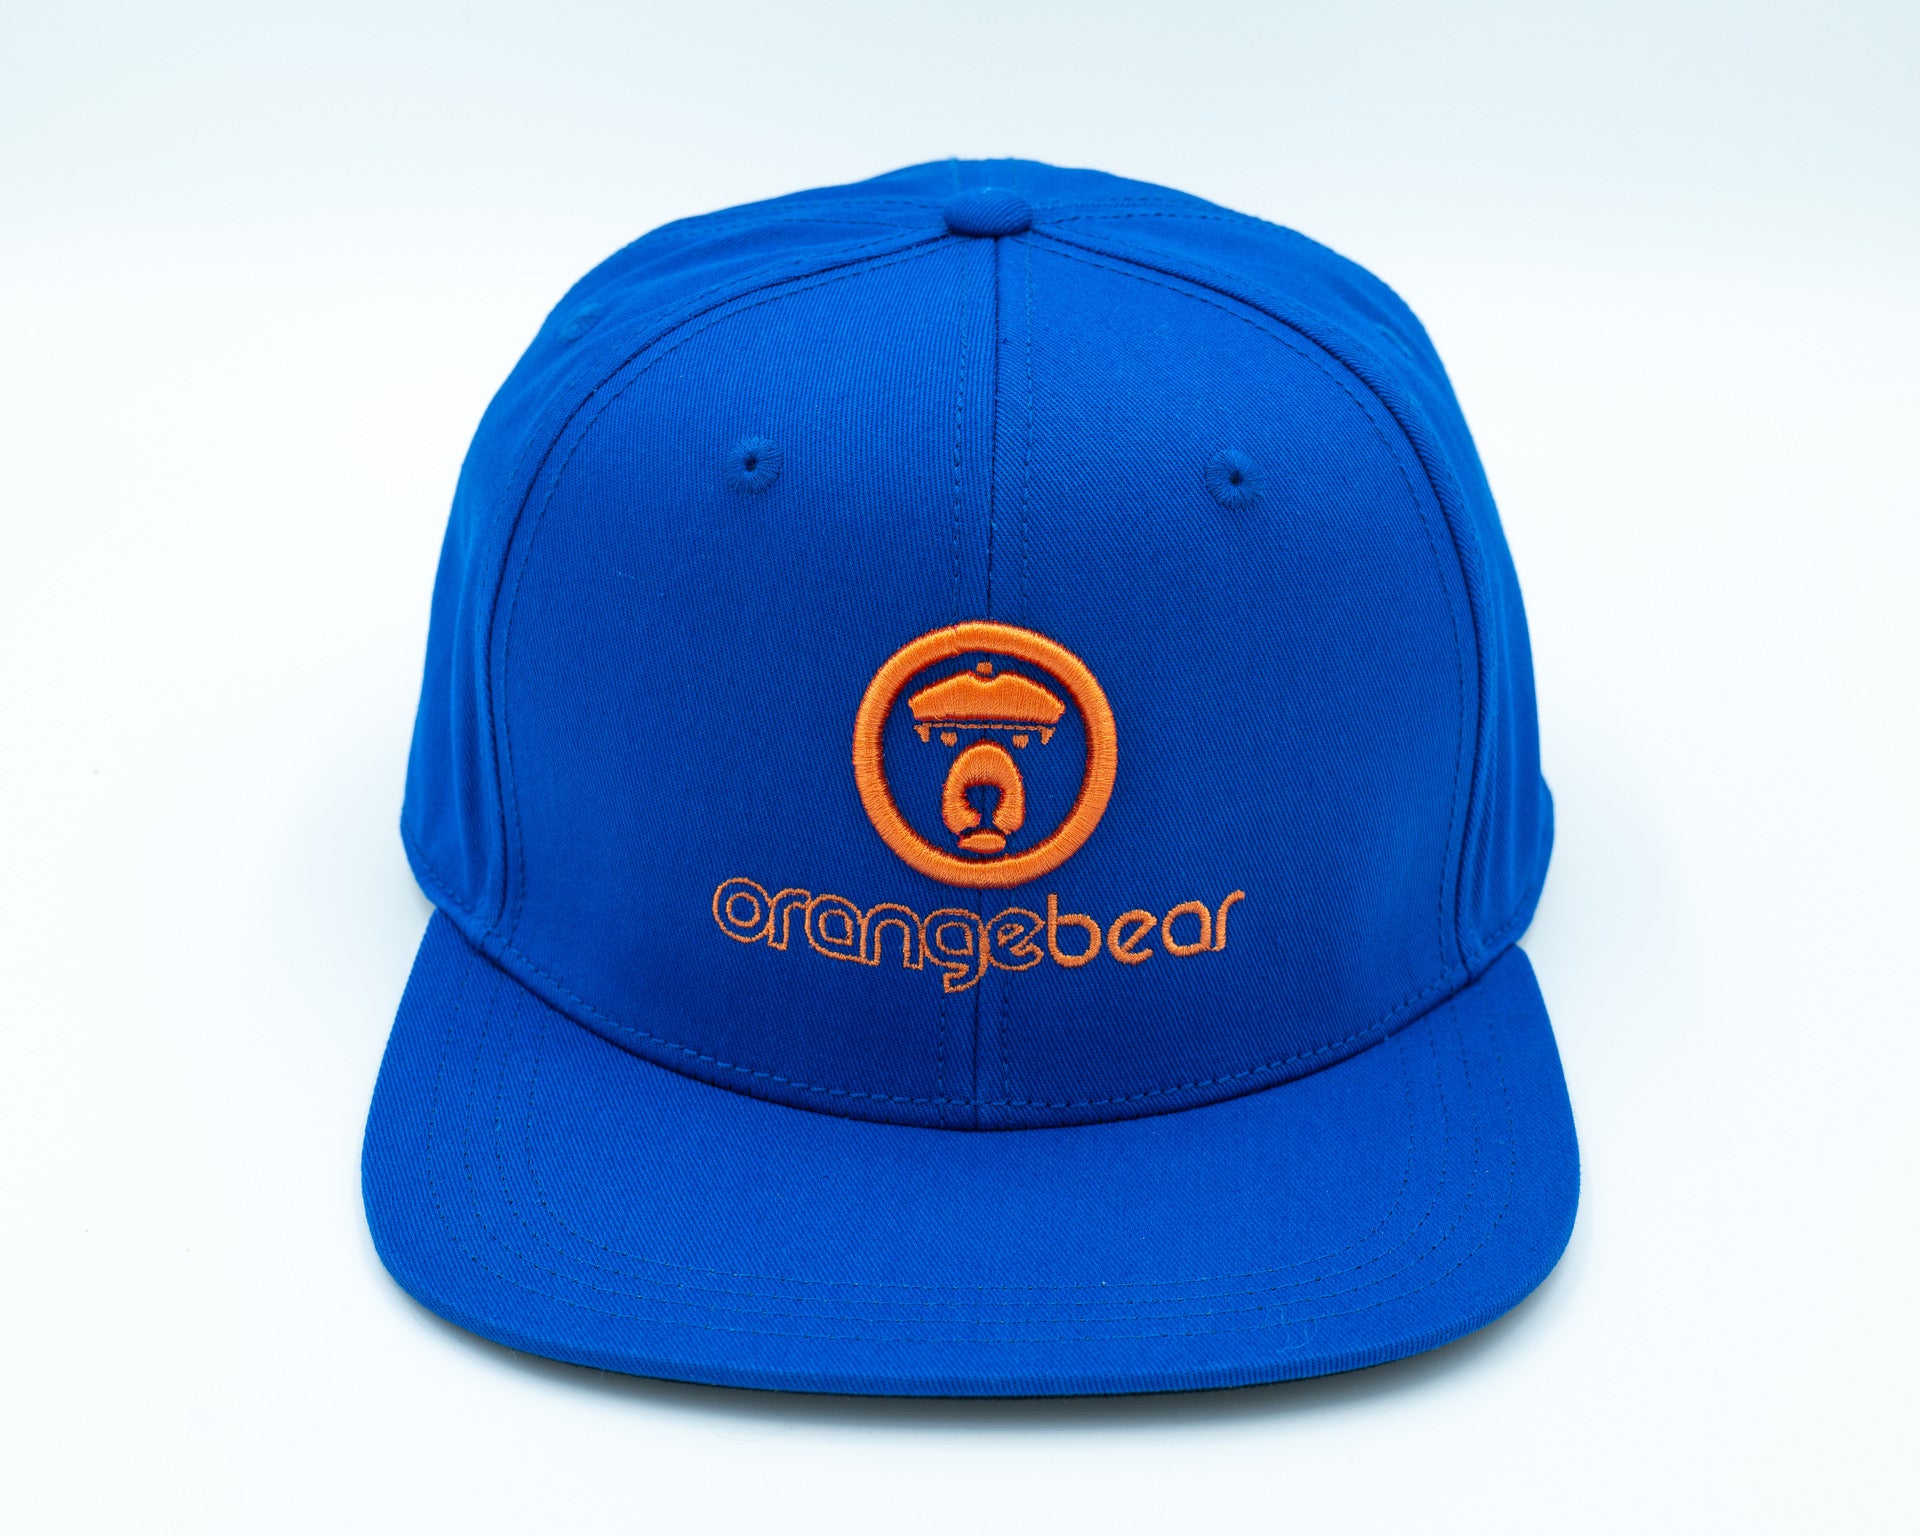 OranbearSTL Baseball Hat in blue frontside